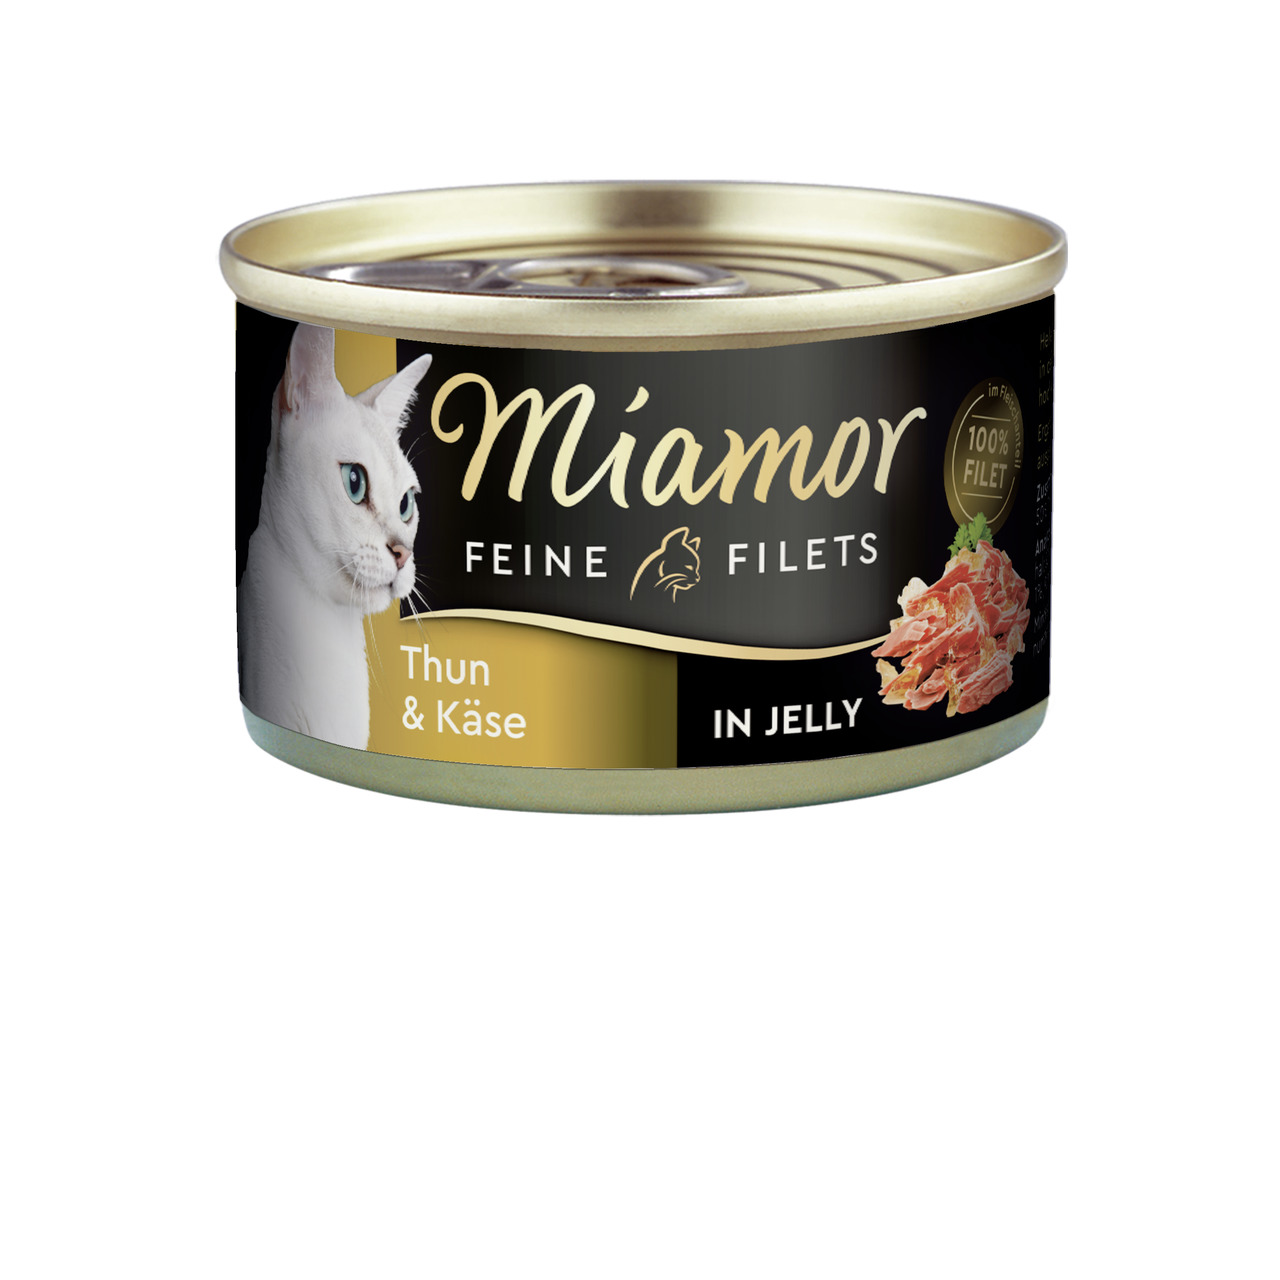 Miamor Feine Filets in Jelly Thun & Käse Katzen Nassfutter 100 g